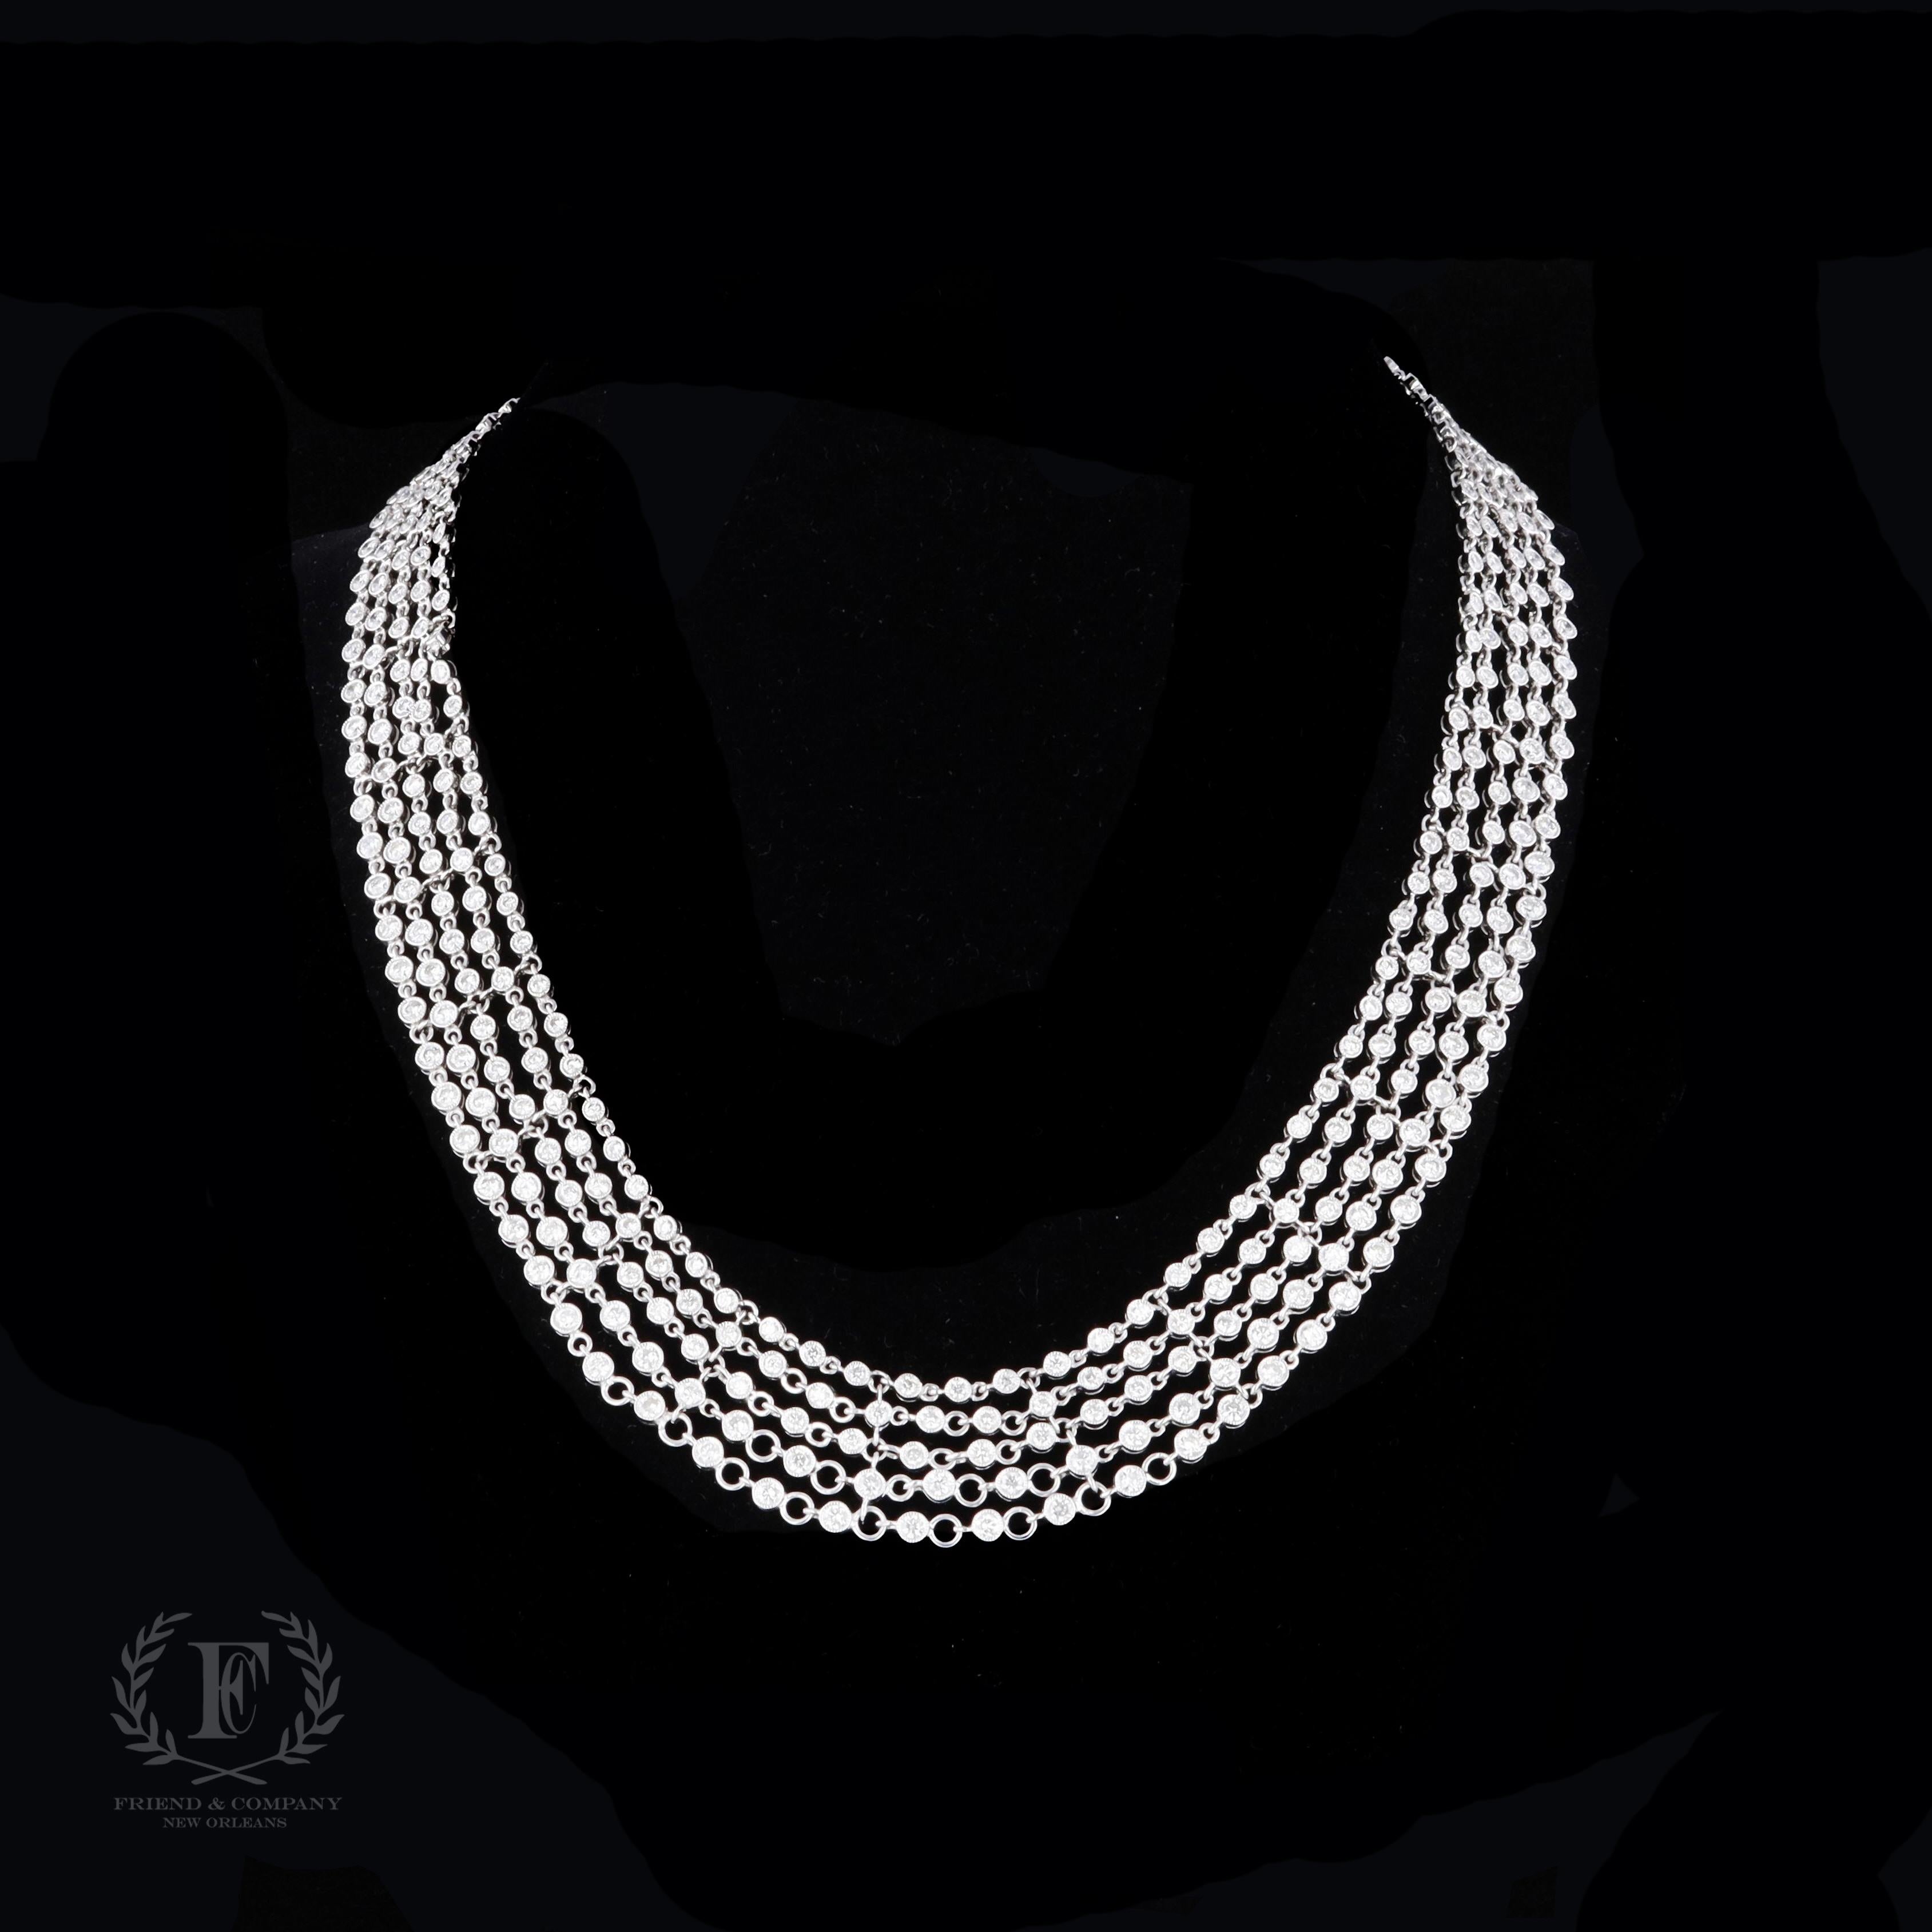 Diese Halskette ist der Inbegriff von Eleganz und Glamour. Dieses wunderschöne, mehrreihige Diamantcollier aus 18 Karat Weißgold besteht aus 420 runden Diamanten mit einem Gesamtgewicht von 15,10 Karat. Die Halskette misst 16 Zoll Länge.